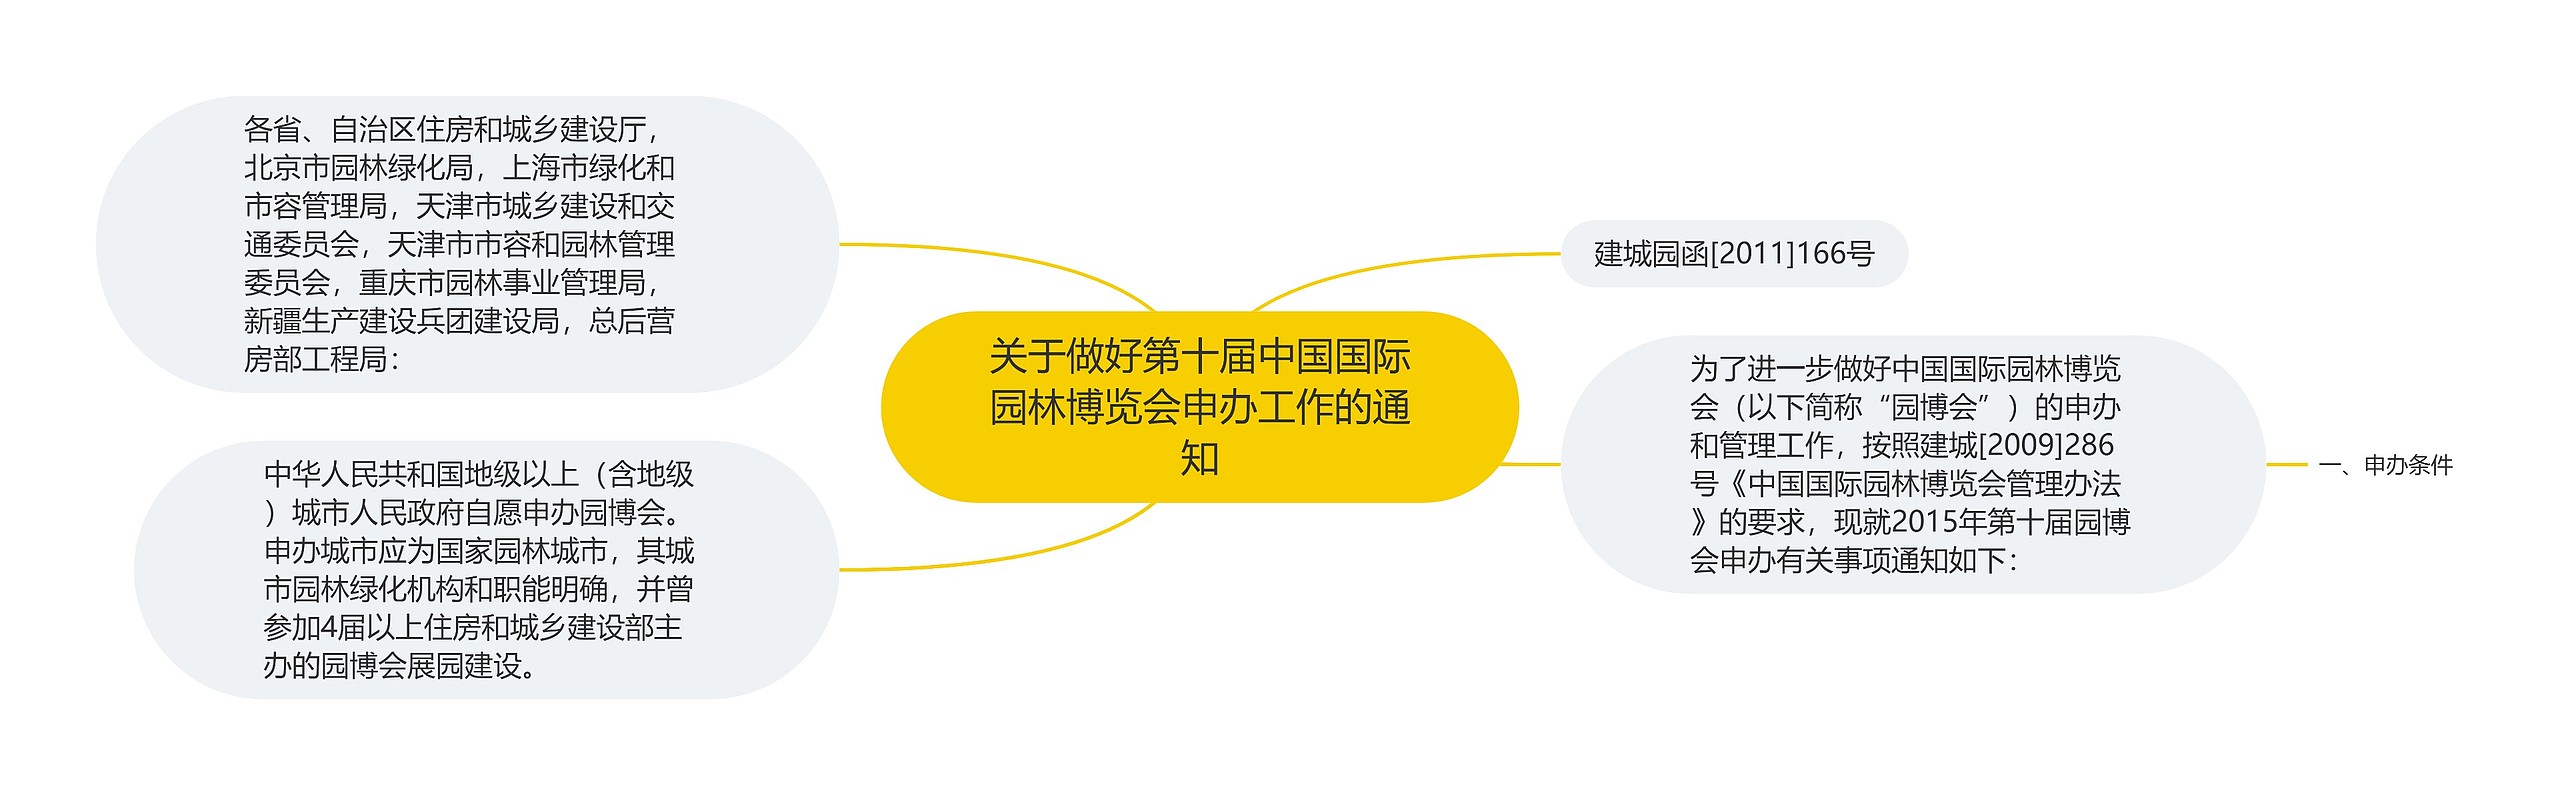 关于做好第十届中国国际园林博览会申办工作的通知思维导图